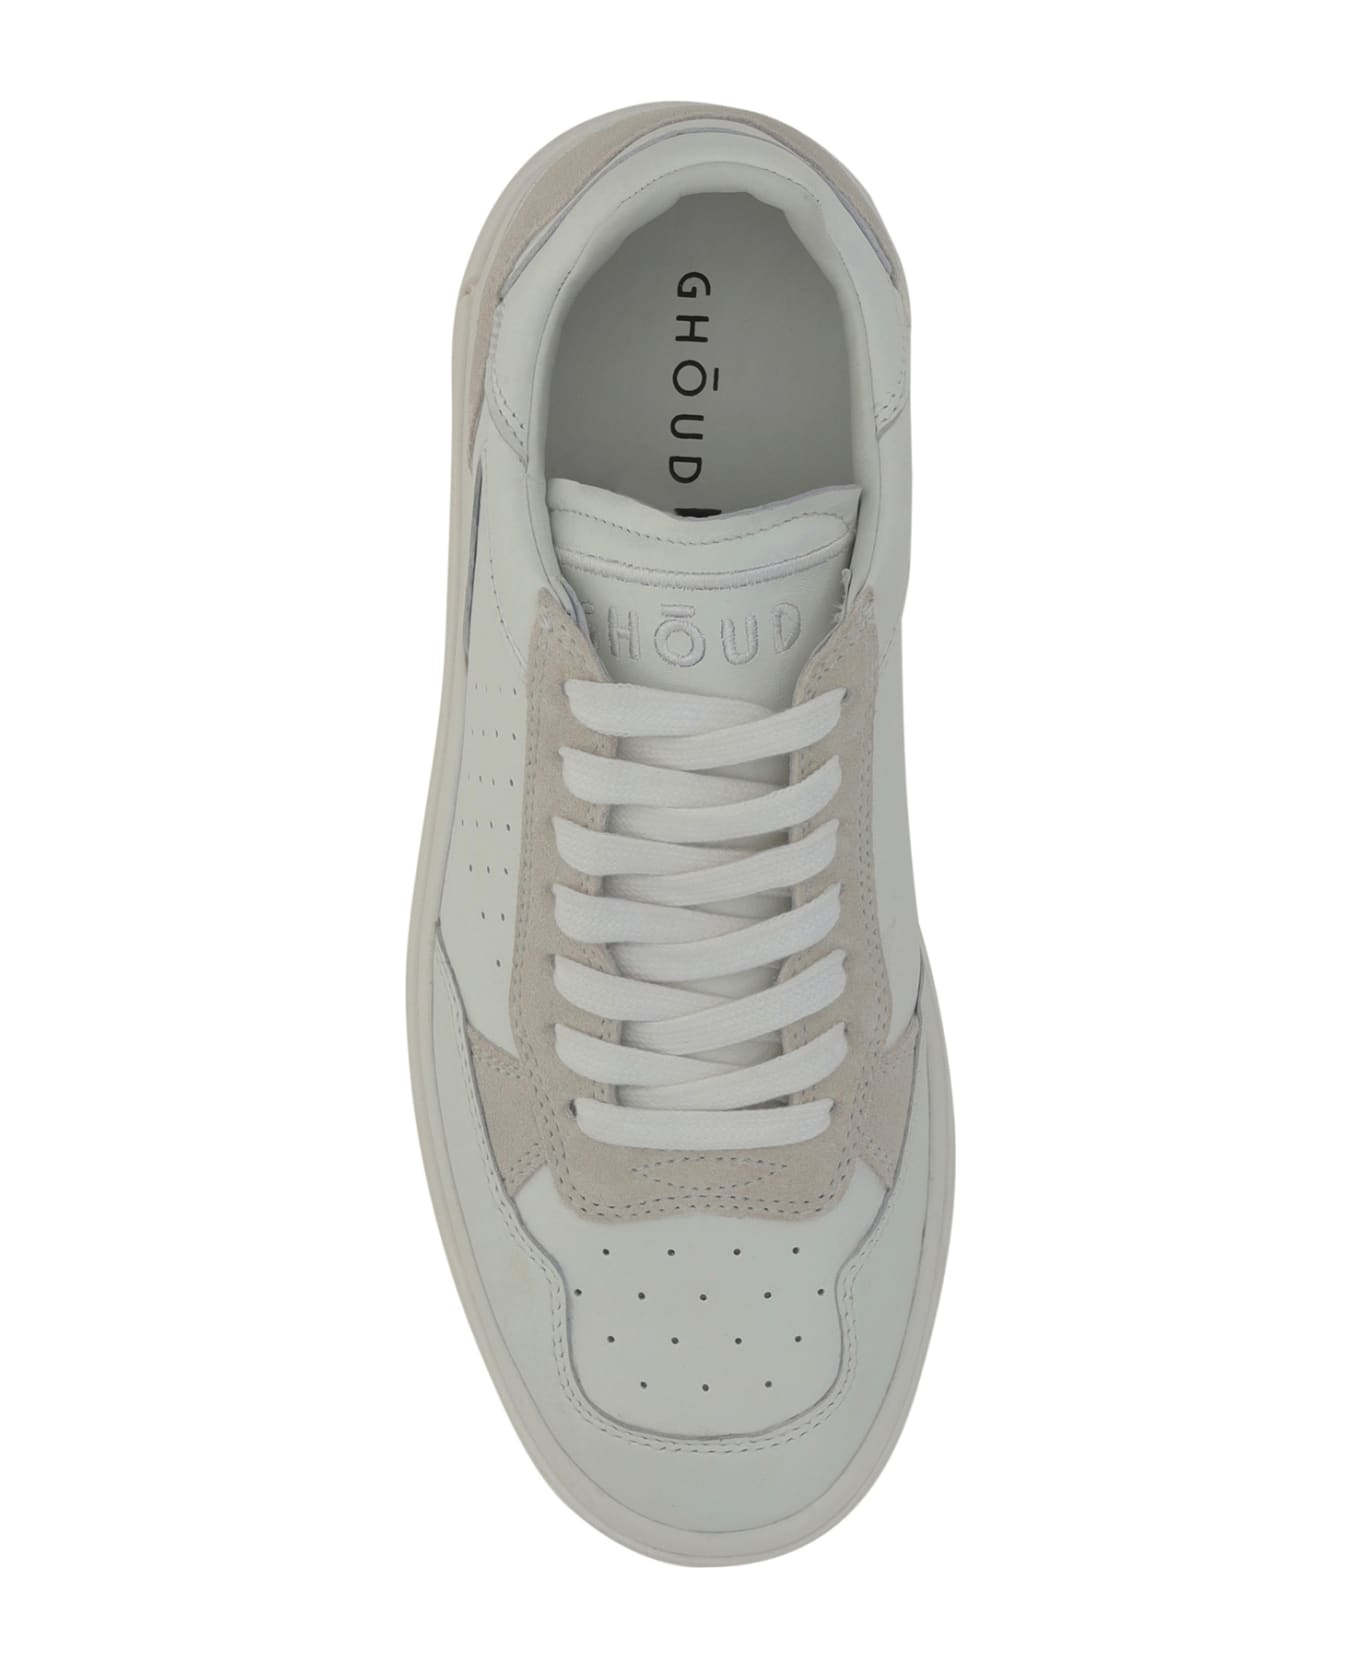 GHOUD Tweener Sneakers - White